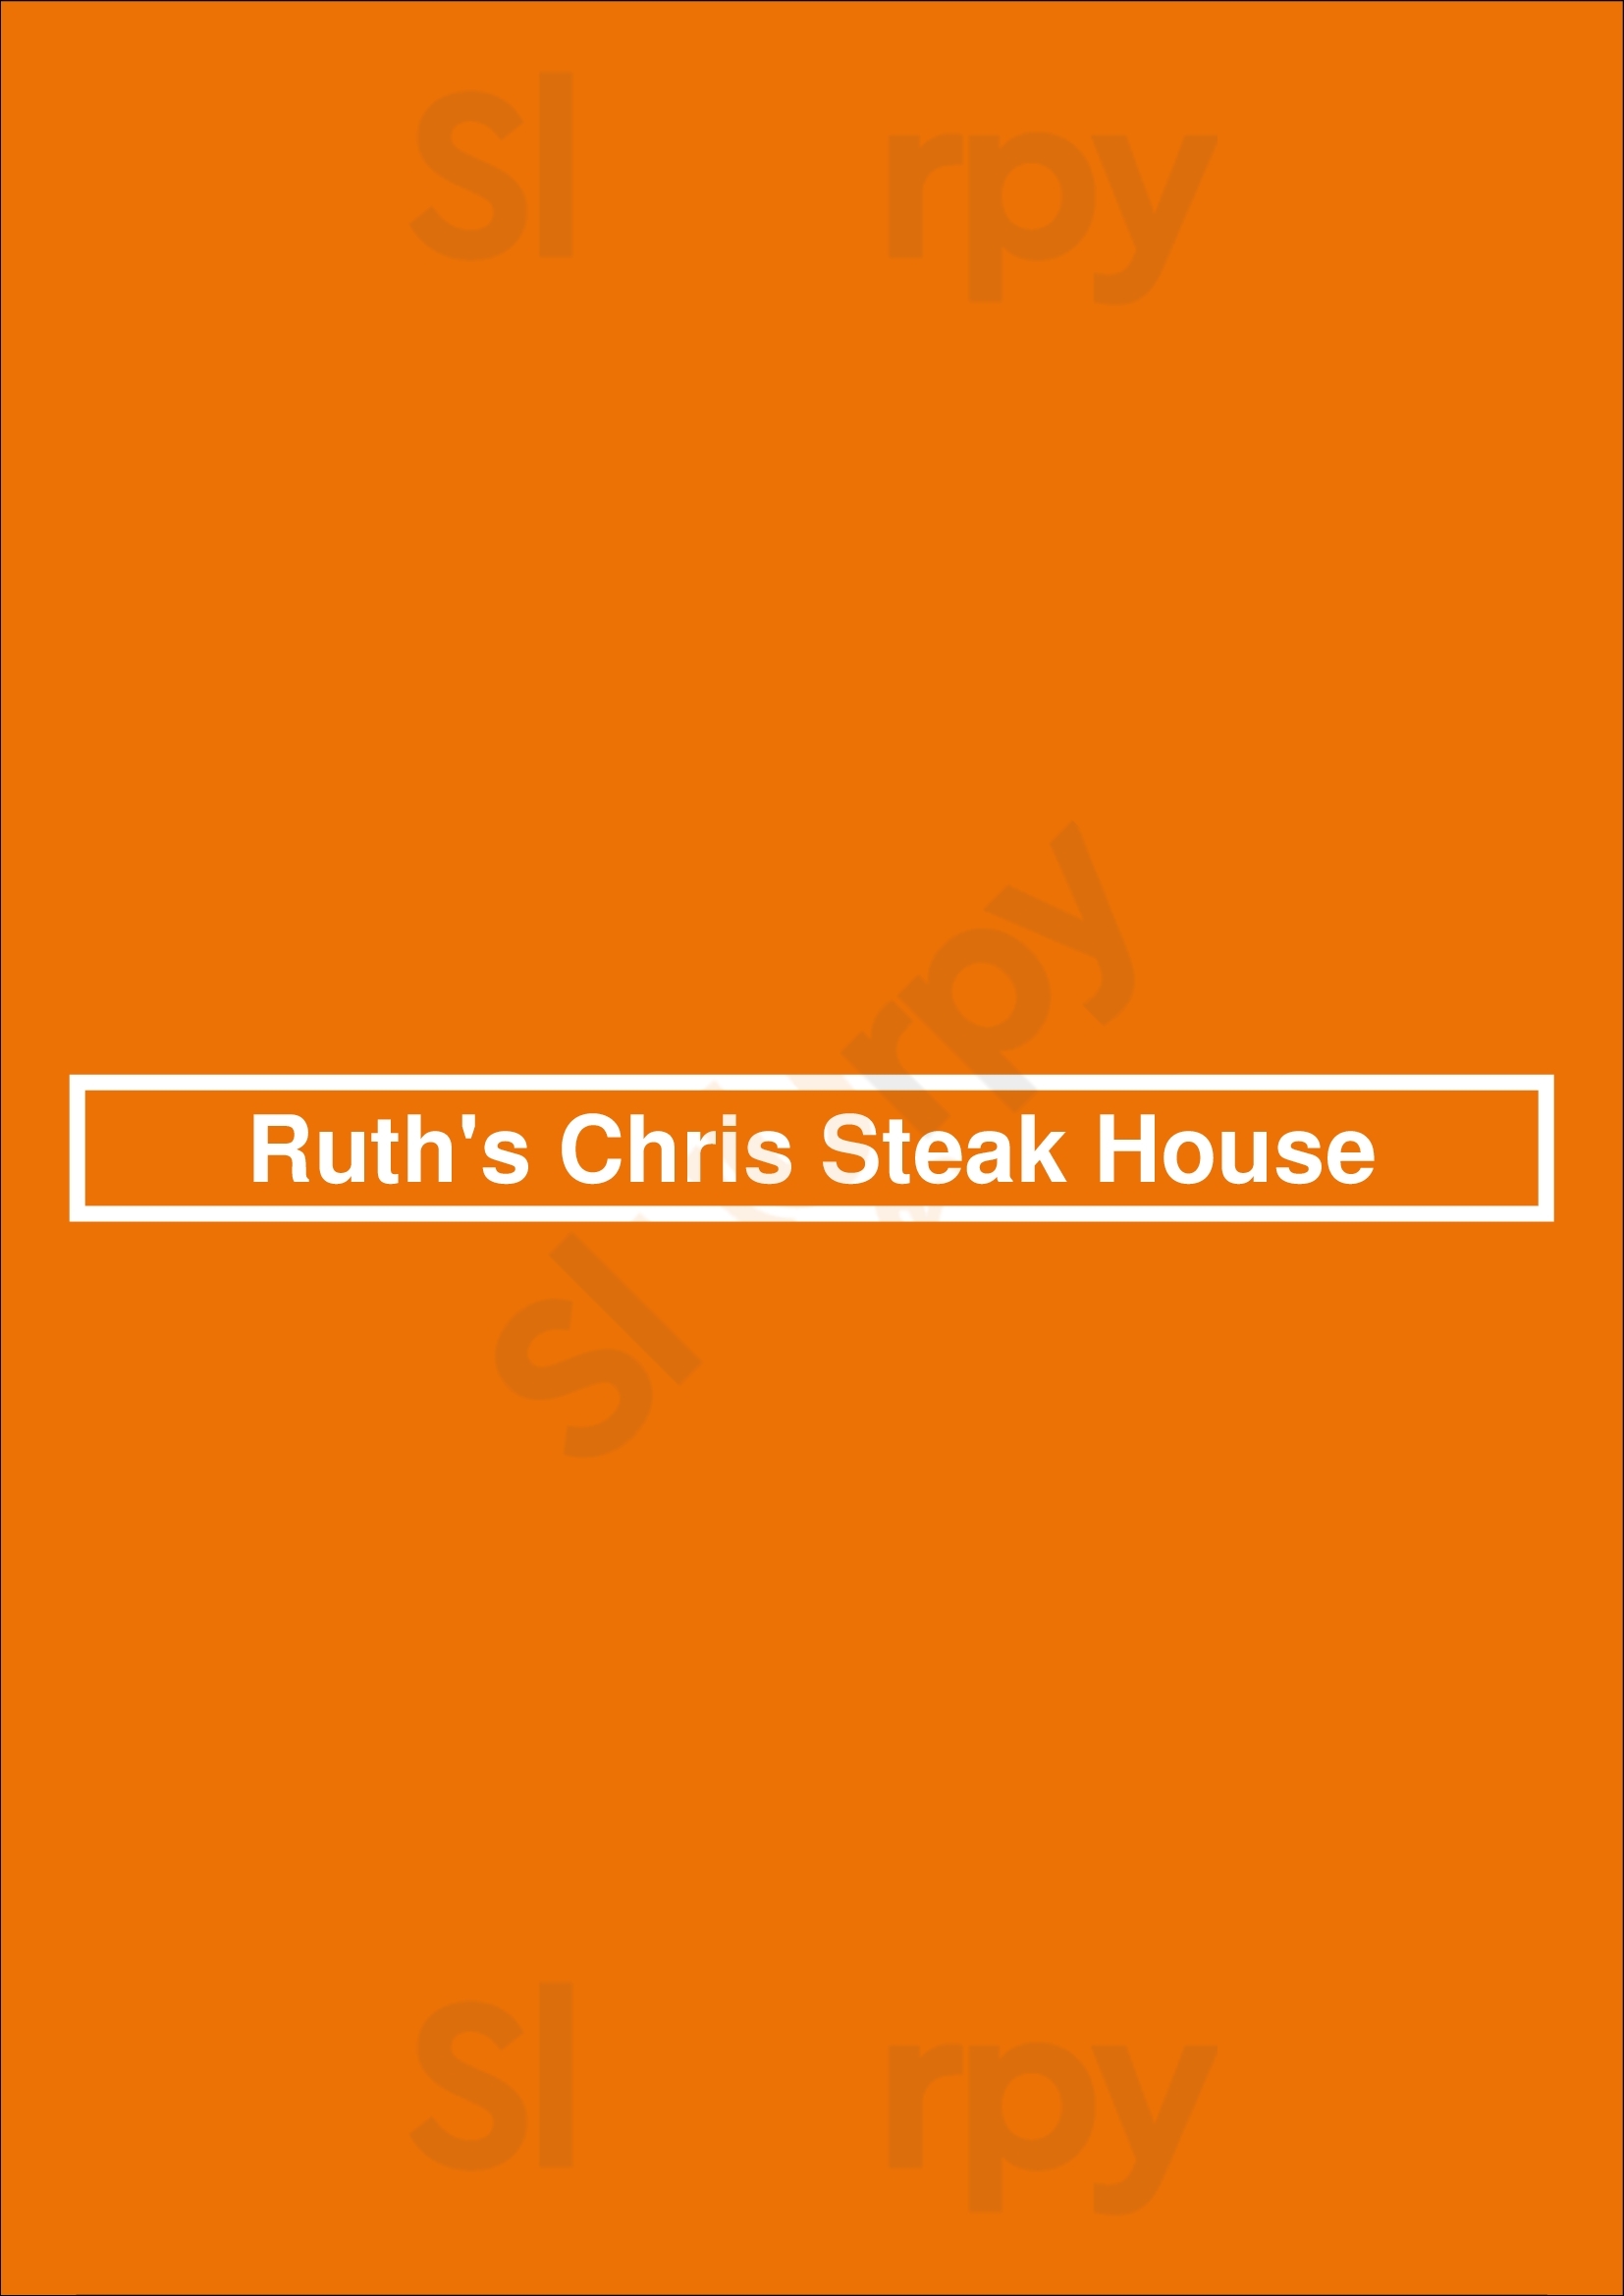 Ruth's Chris Steak House Dallas Menu - 1